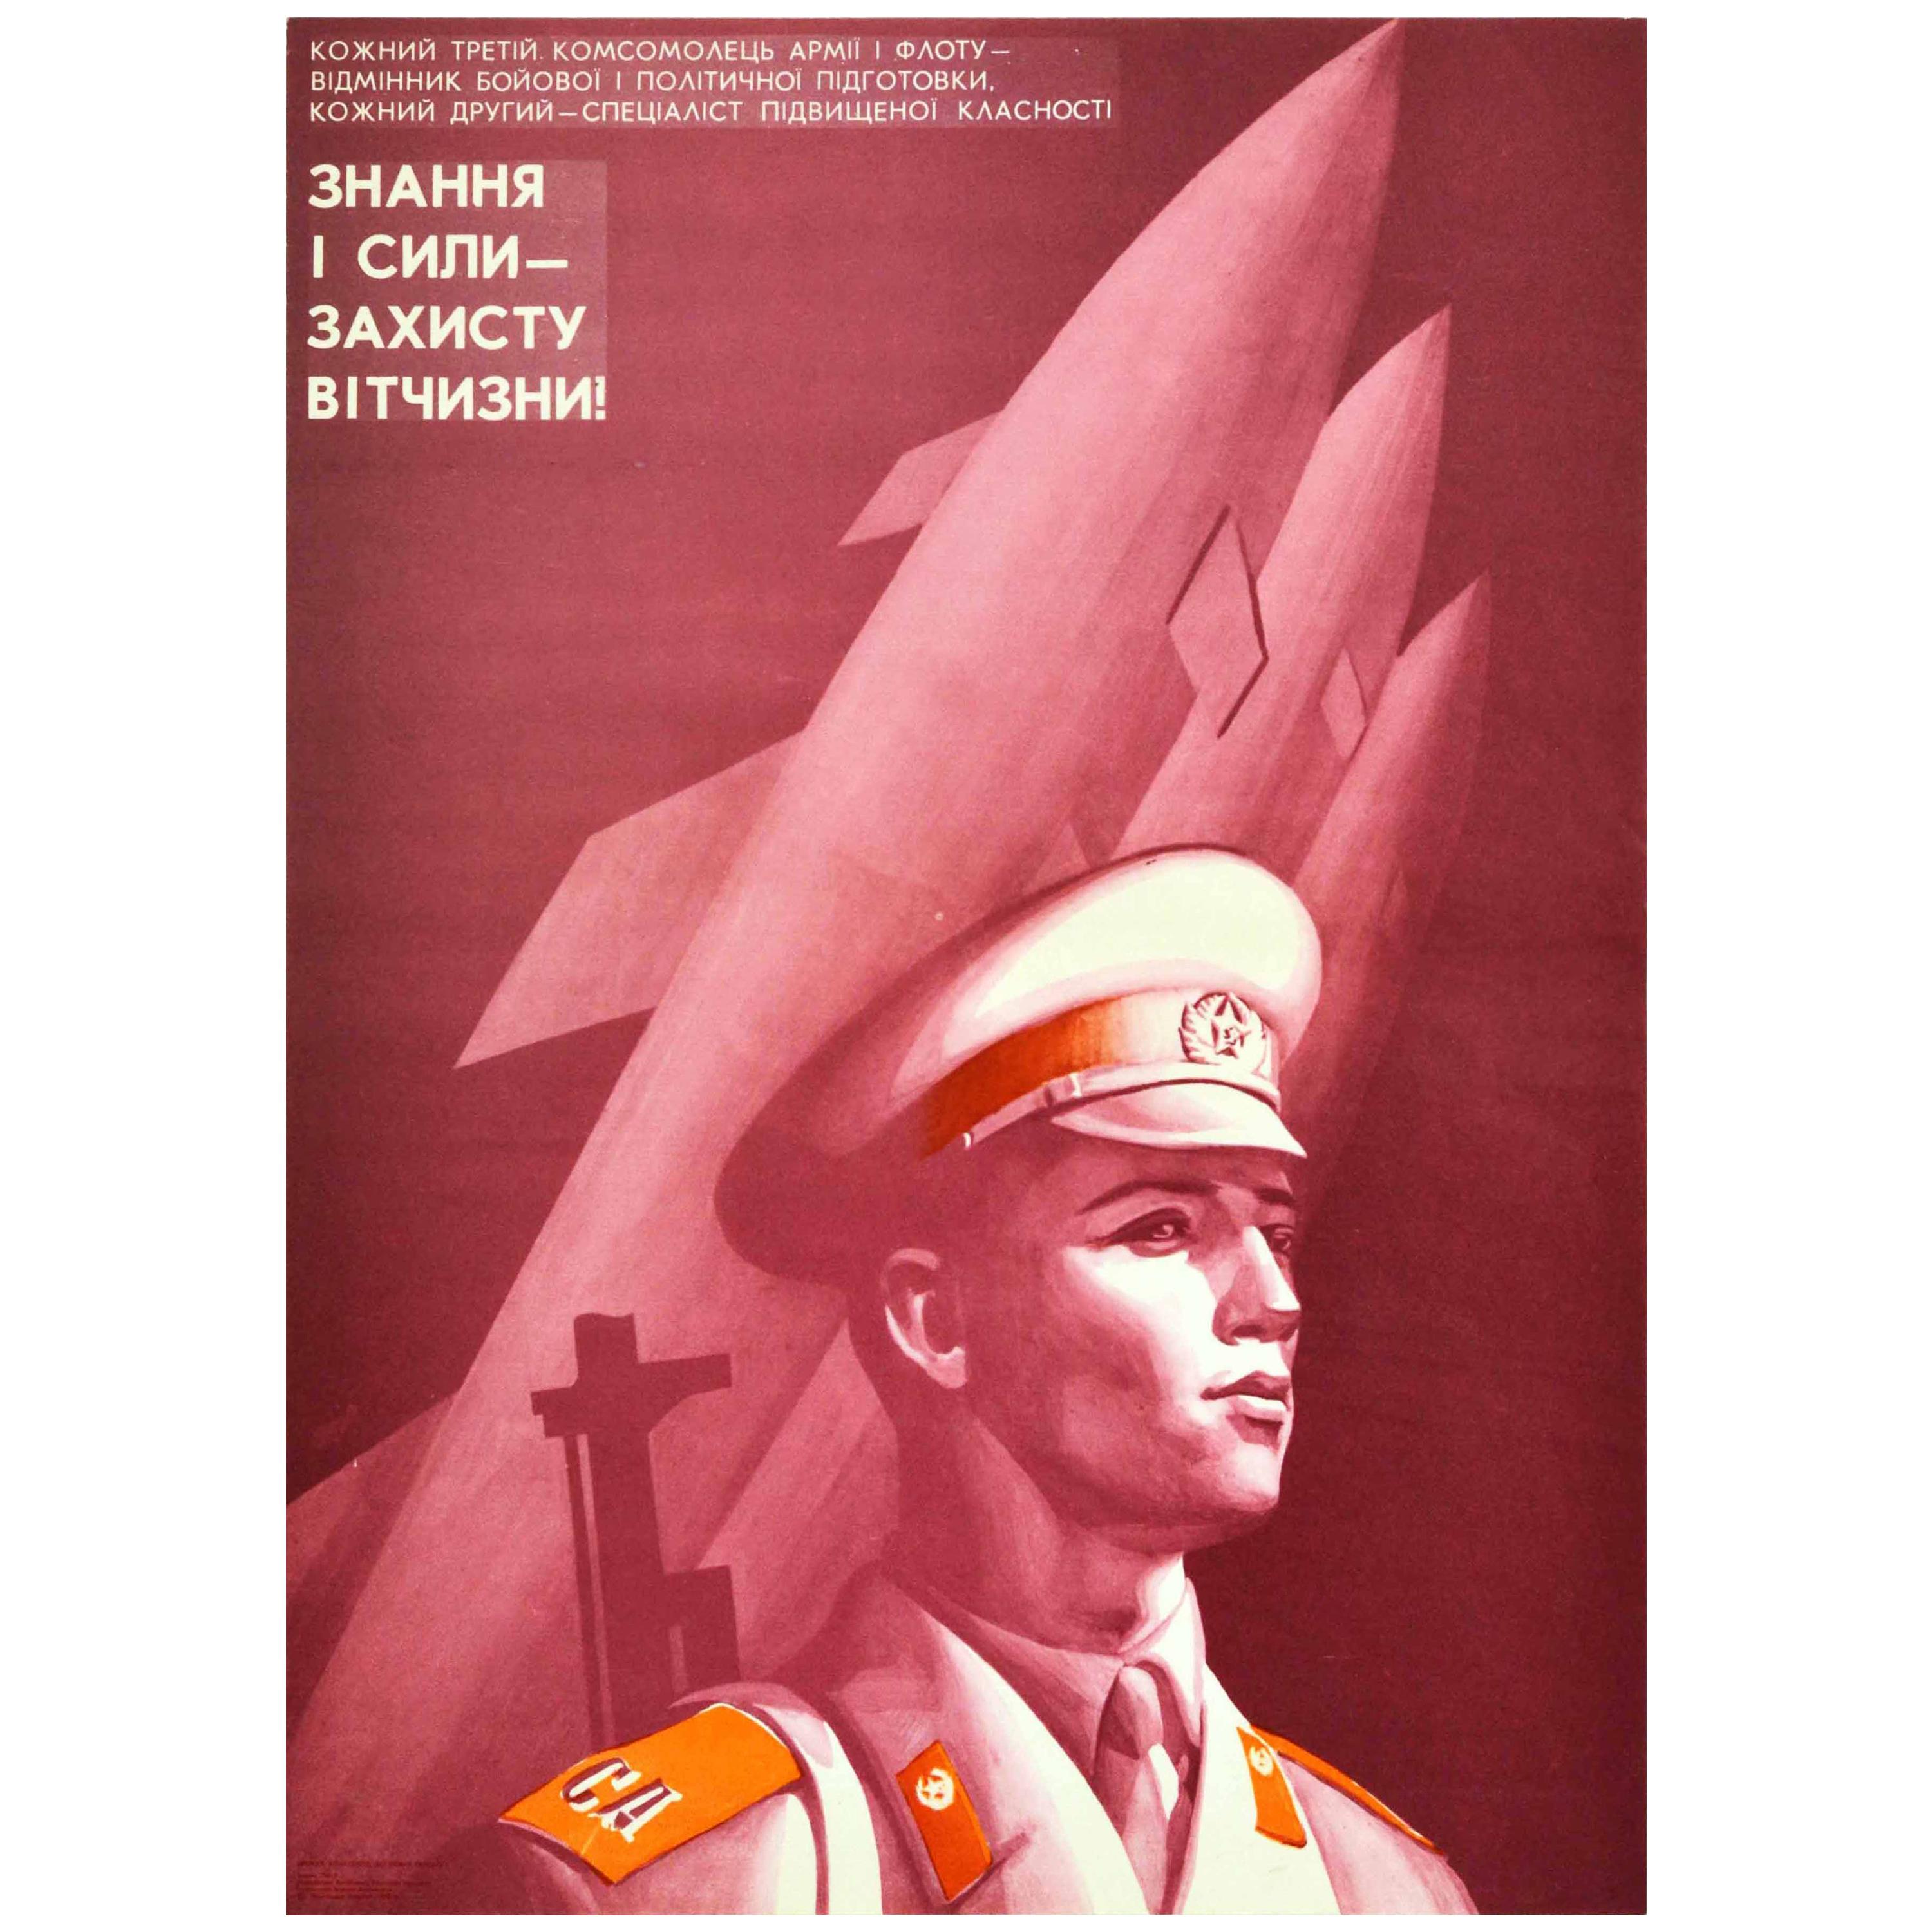 Affiche vintage d'origine de l'Armée rouge, Navy, Navy soviétique, connaissance militaire, Défense